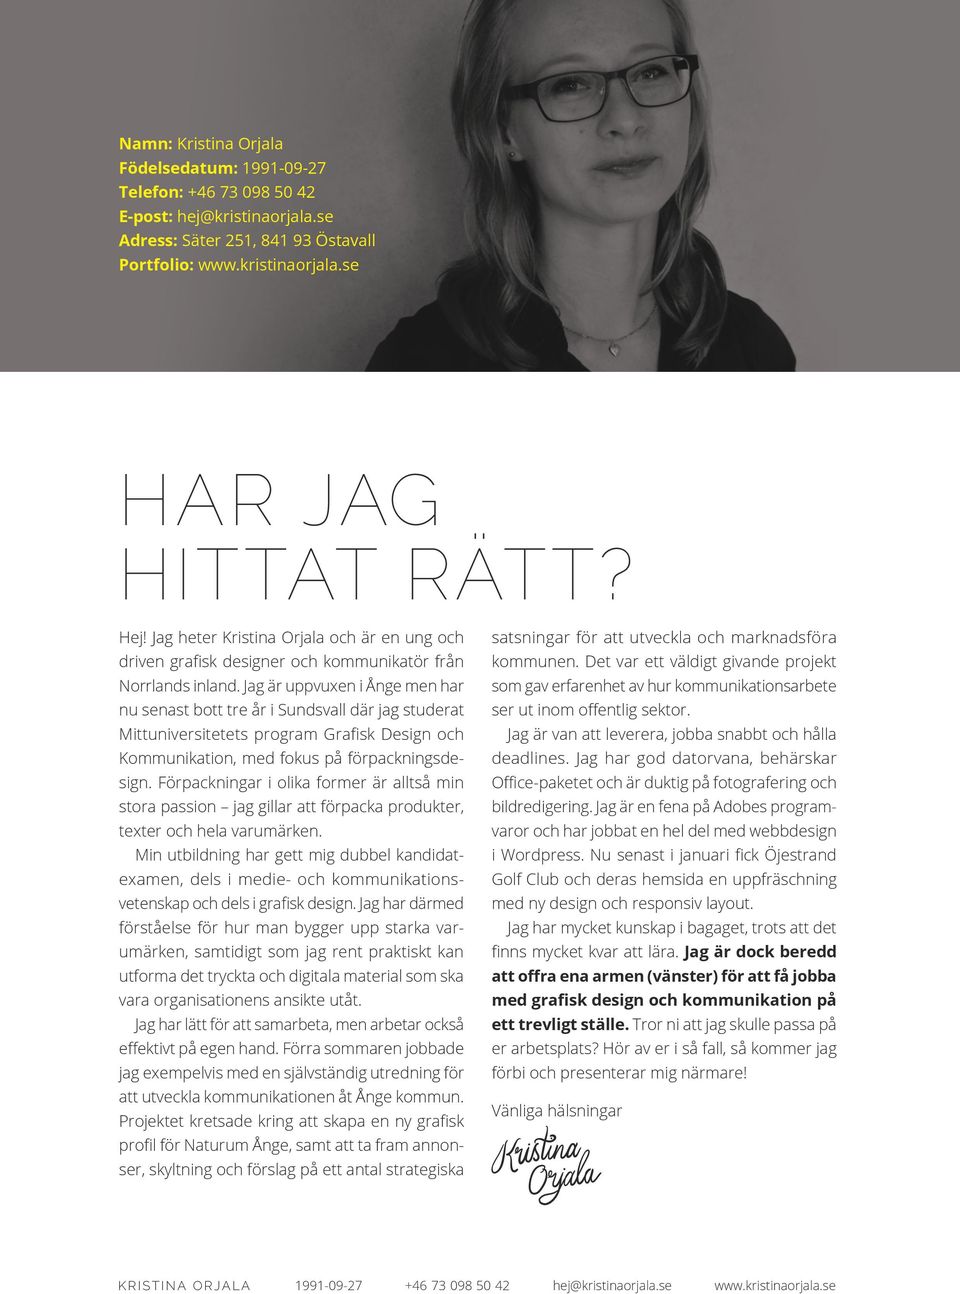 Jag är uppvuxen i Ånge men har nu senast bott tre år i Sundsvall där jag studerat Mittuniversitetets program Grafisk Design och Kommunikation, med fokus på förpackningsdesign.